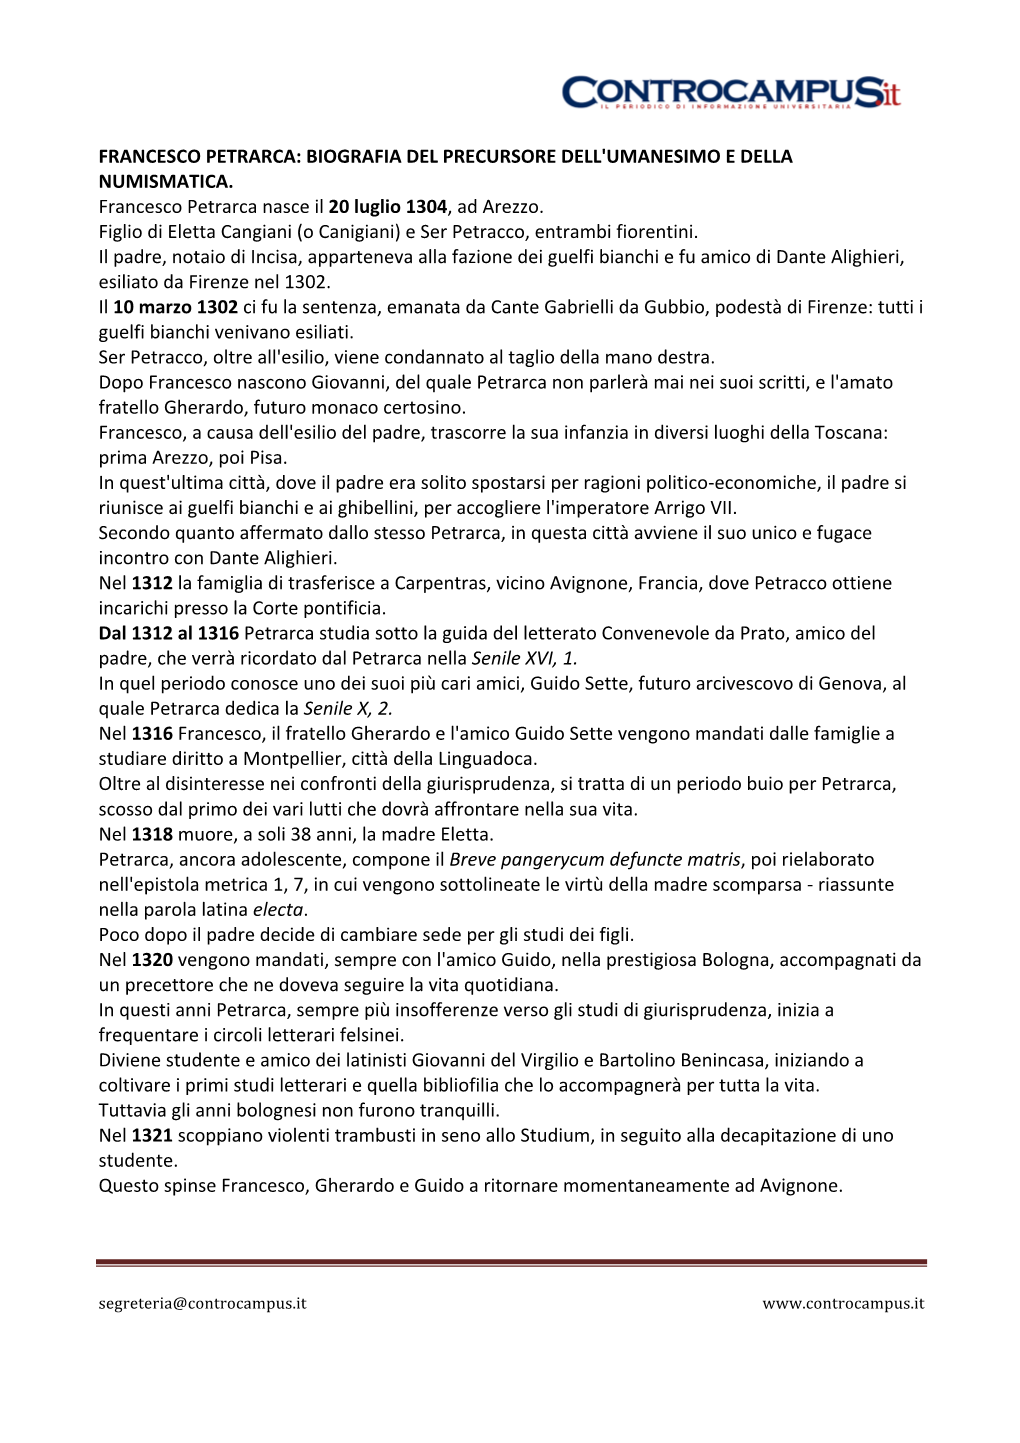 Francesco Petrarca: Biografia Del Precursore Dell'umanesimo E Della Numismatica